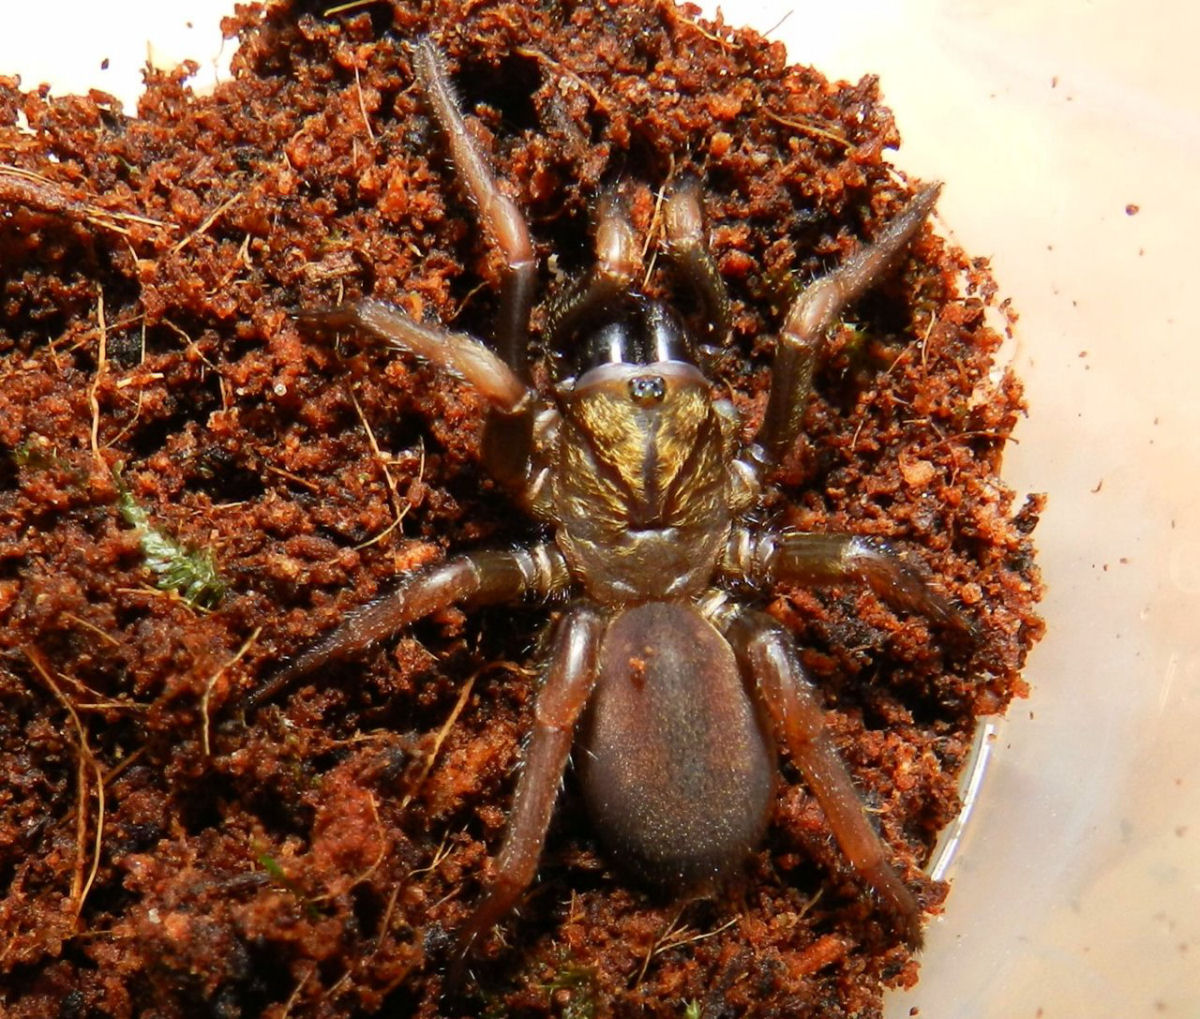 A aranha-de-alçapão é um pesadelo feito realidade para muitos insetos